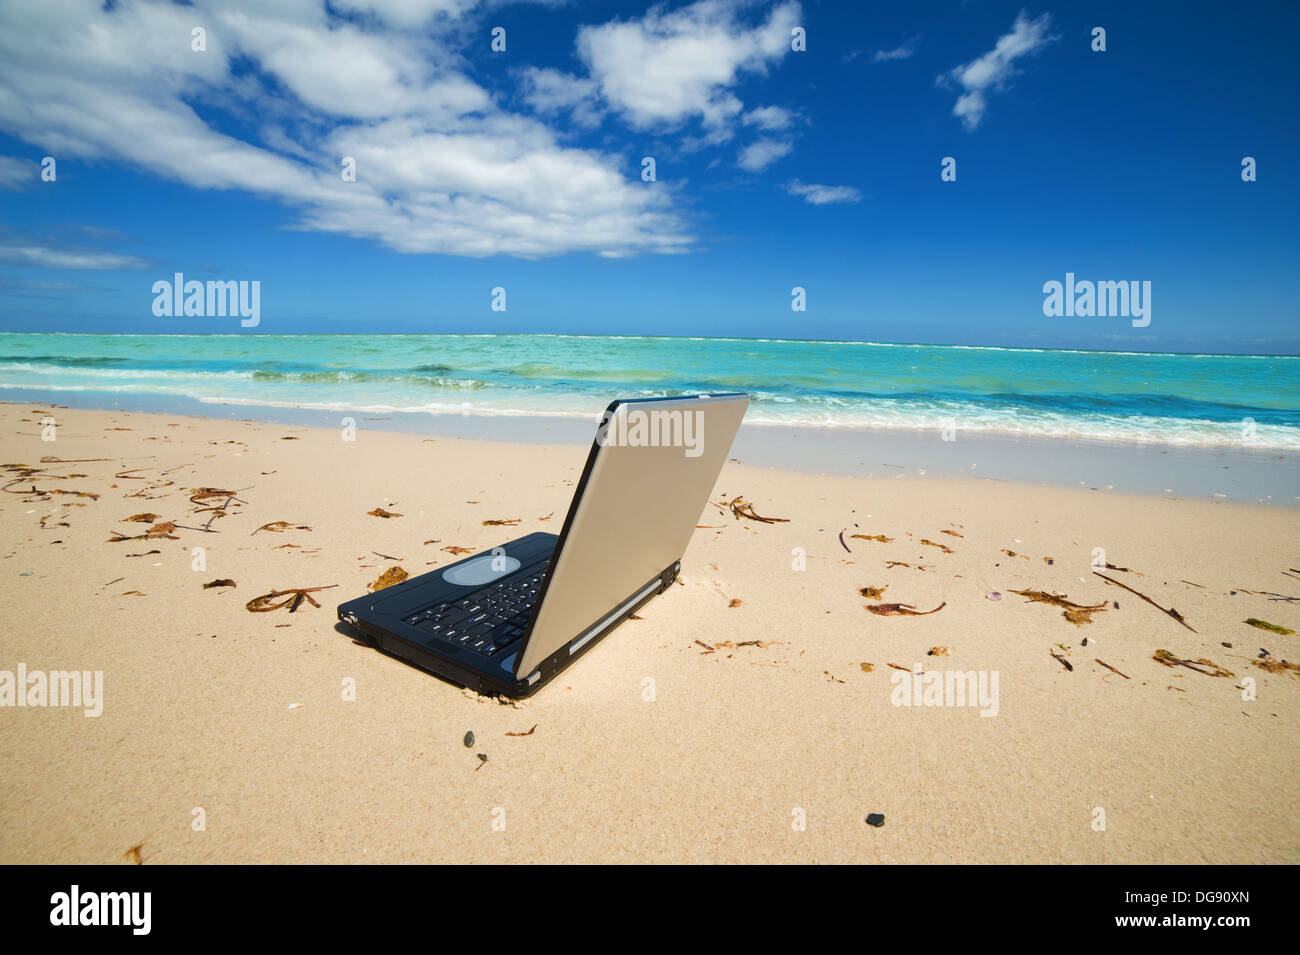 laptop on the beach as a freelance idea Stock Photo